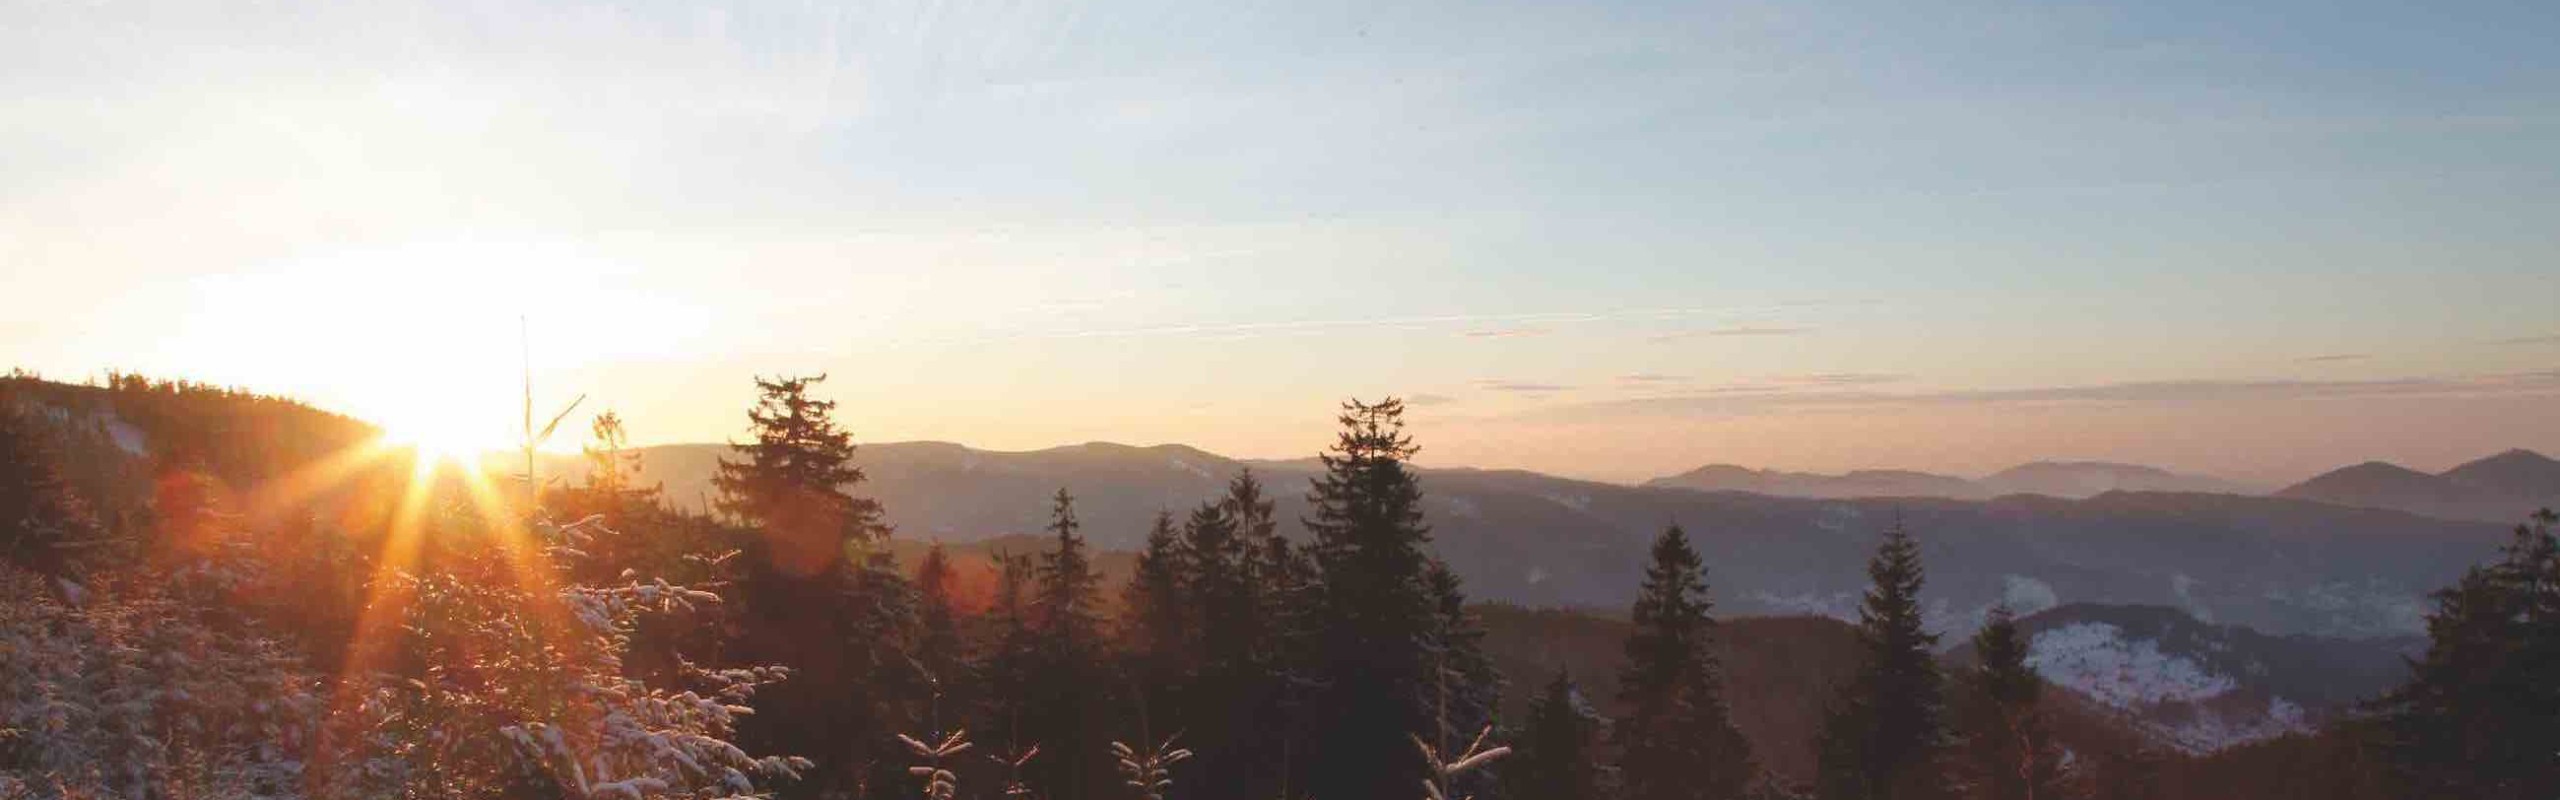 Das Bild zeigt eine Panoramasicht über die Schwarzwaldberge im Winter bei Sonnenaufgang